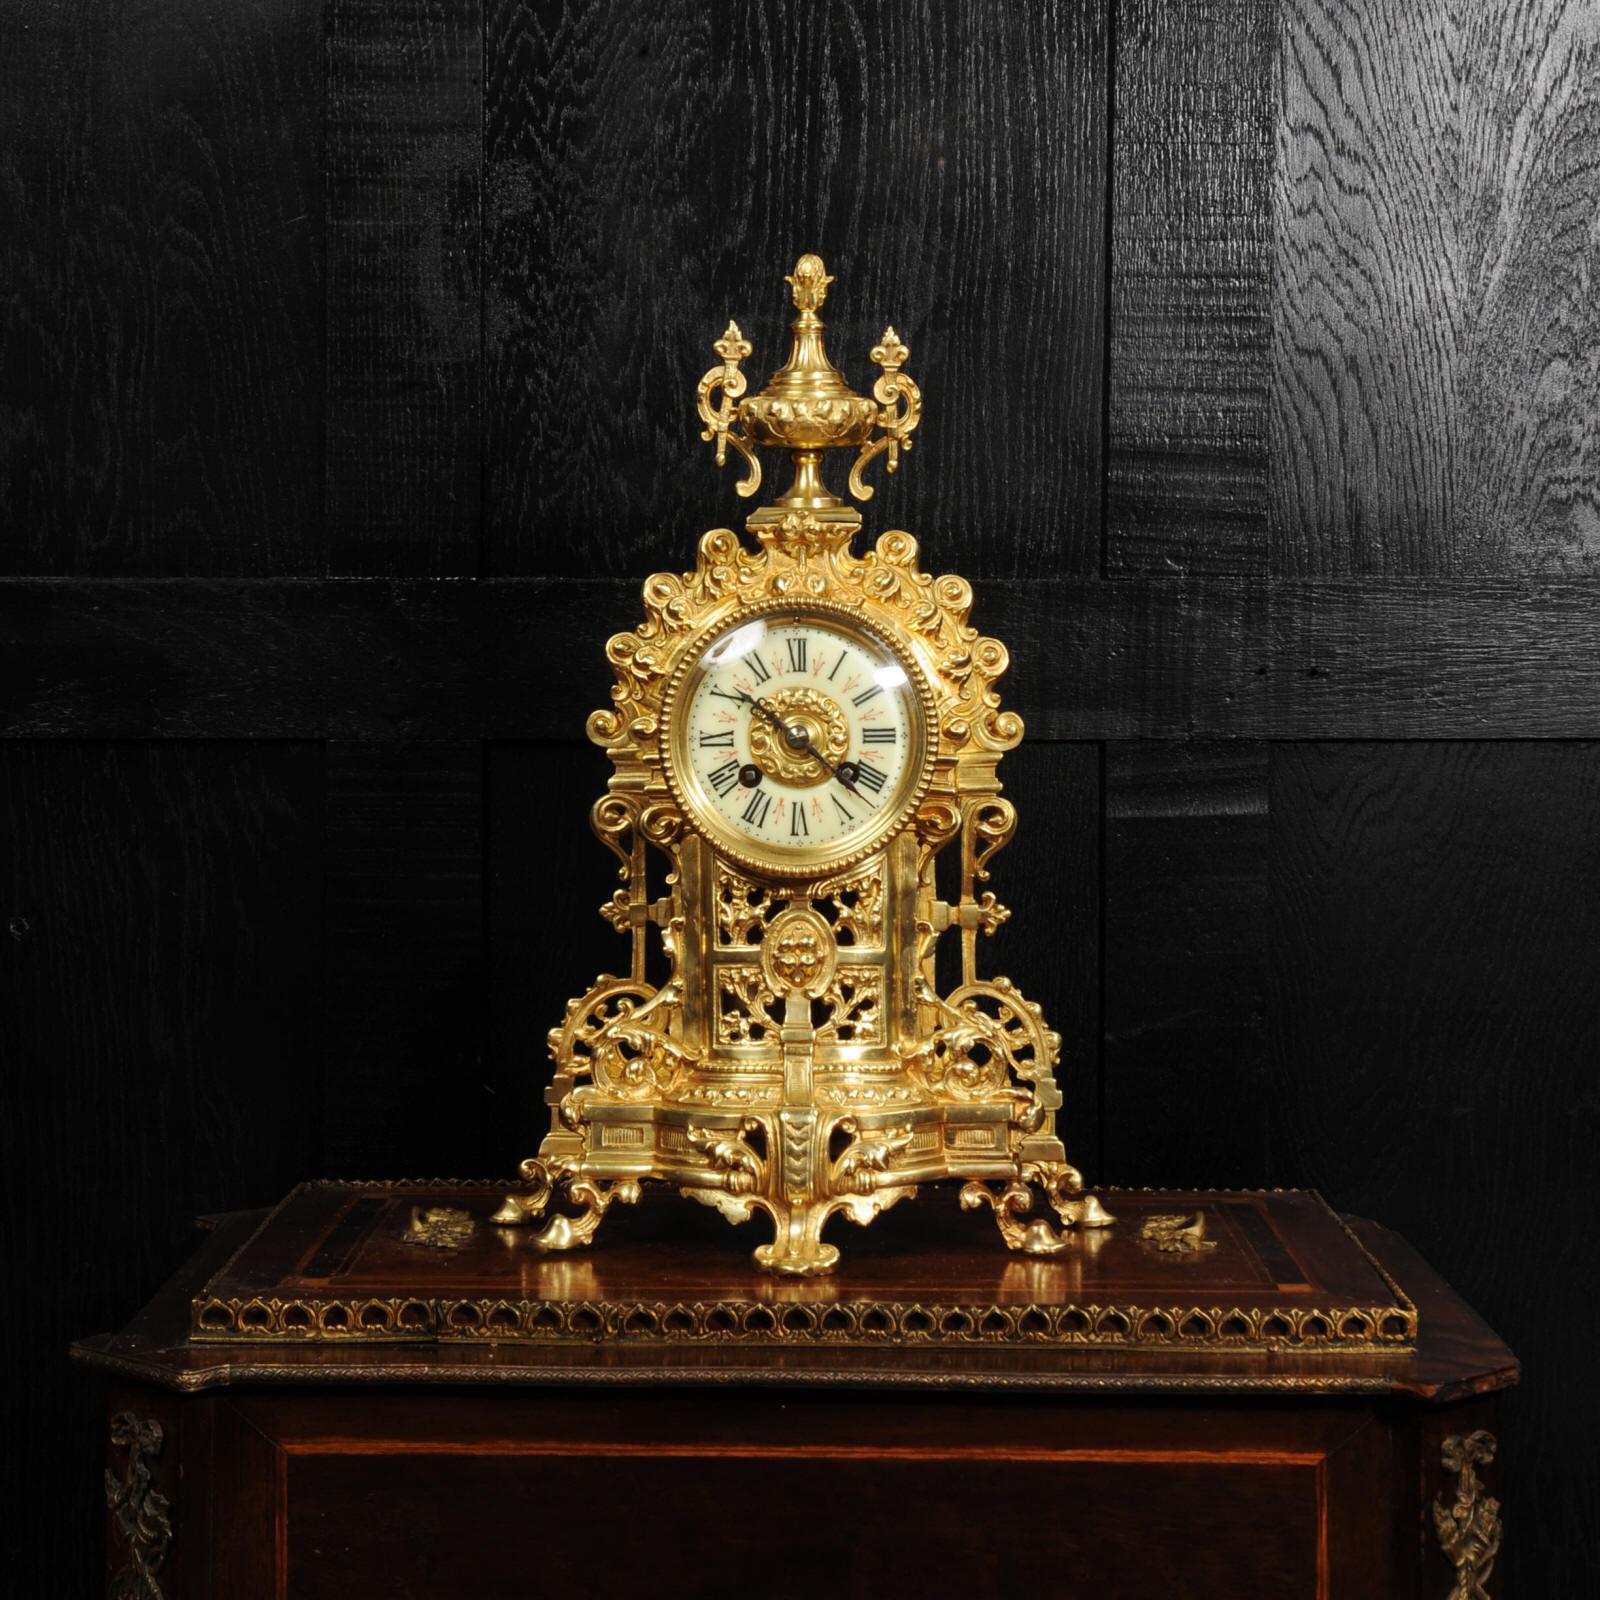 Eine schöne antike französische Uhr aus vergoldeter Bronze von A. D. Mougin.  In architektonischer Form modelliert und mit verschlungenen Akanthusverzierungen versehen, um eine romantische Ruine darzustellen. An der Spitze befindet sich eine Urne